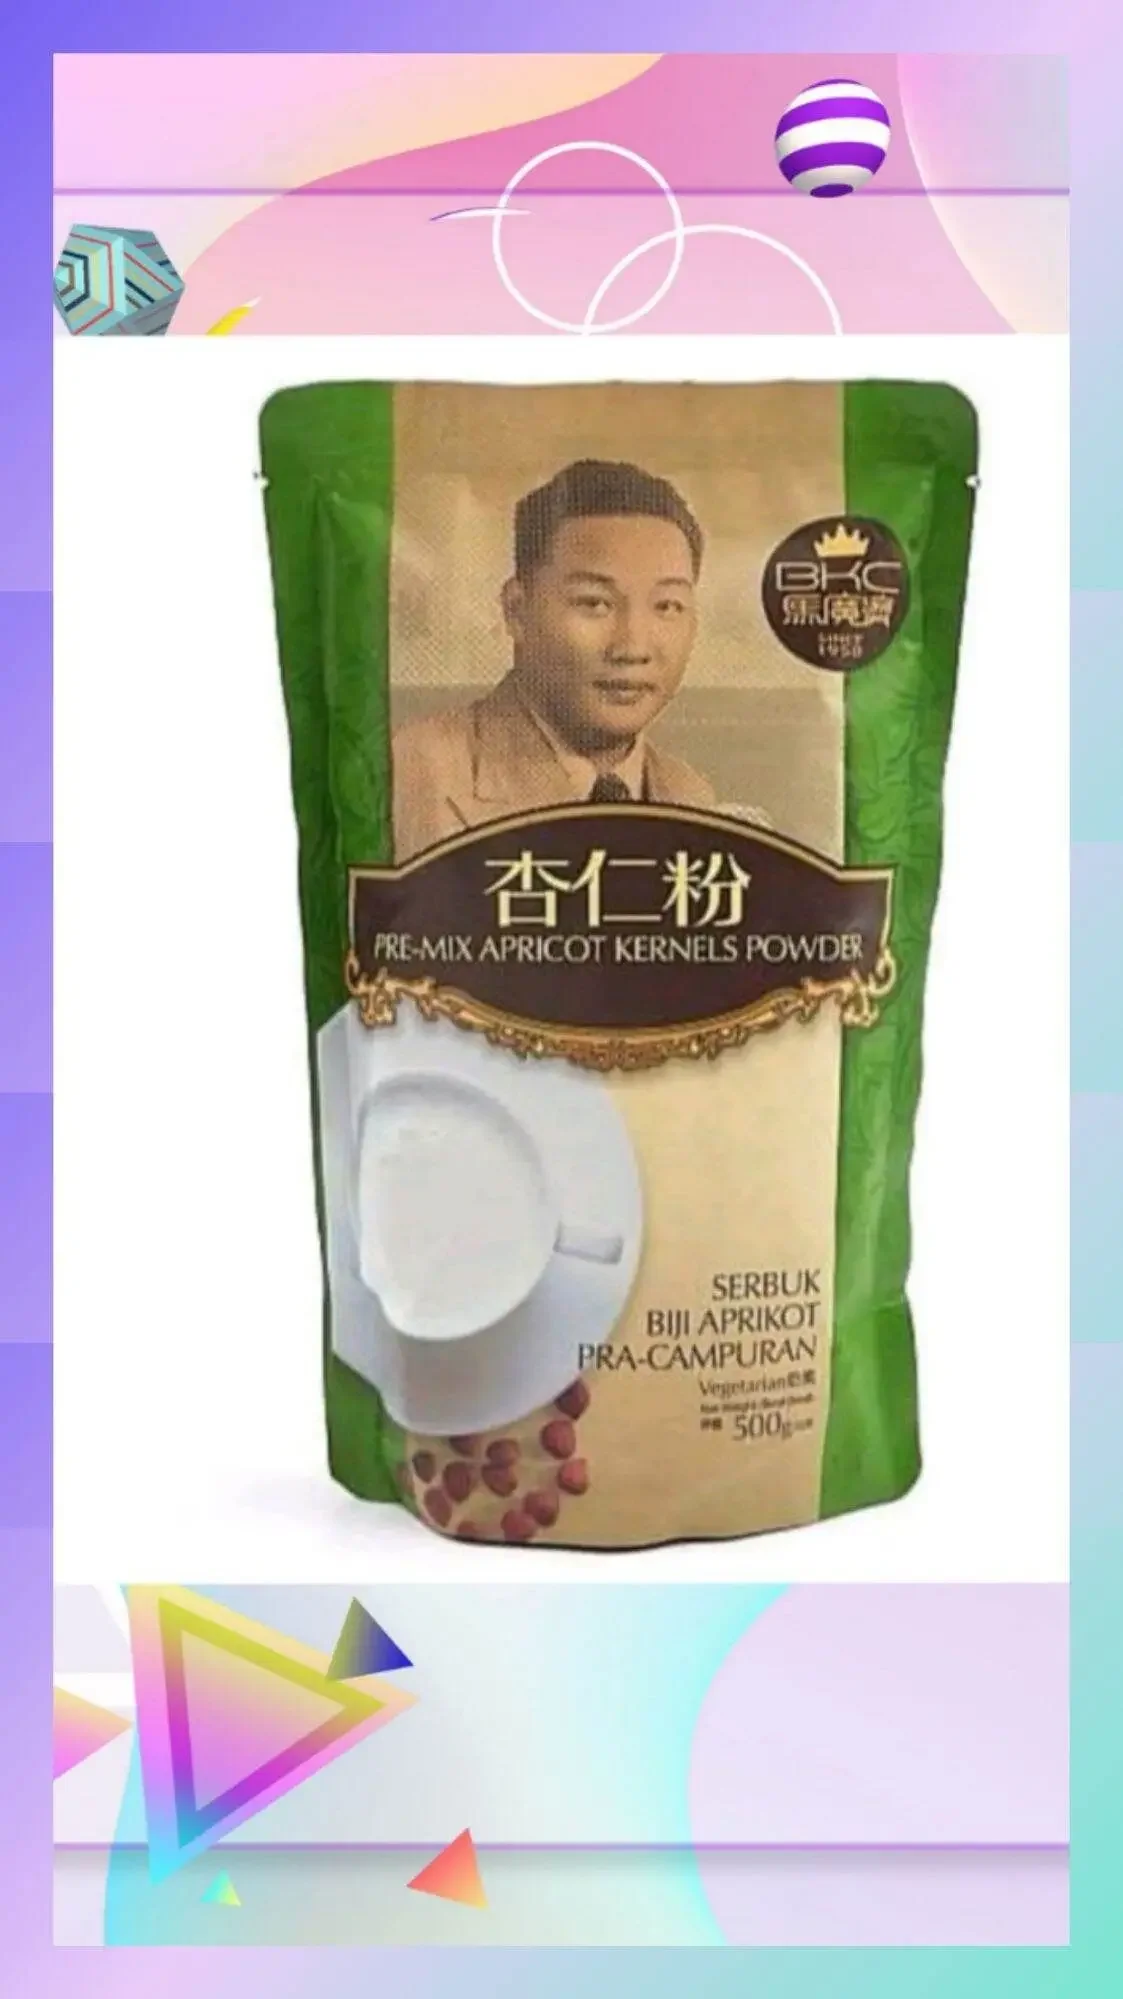 BKC Pre-mix Apricot Kernels Powder(Almond Powder)马广济杏仁粉